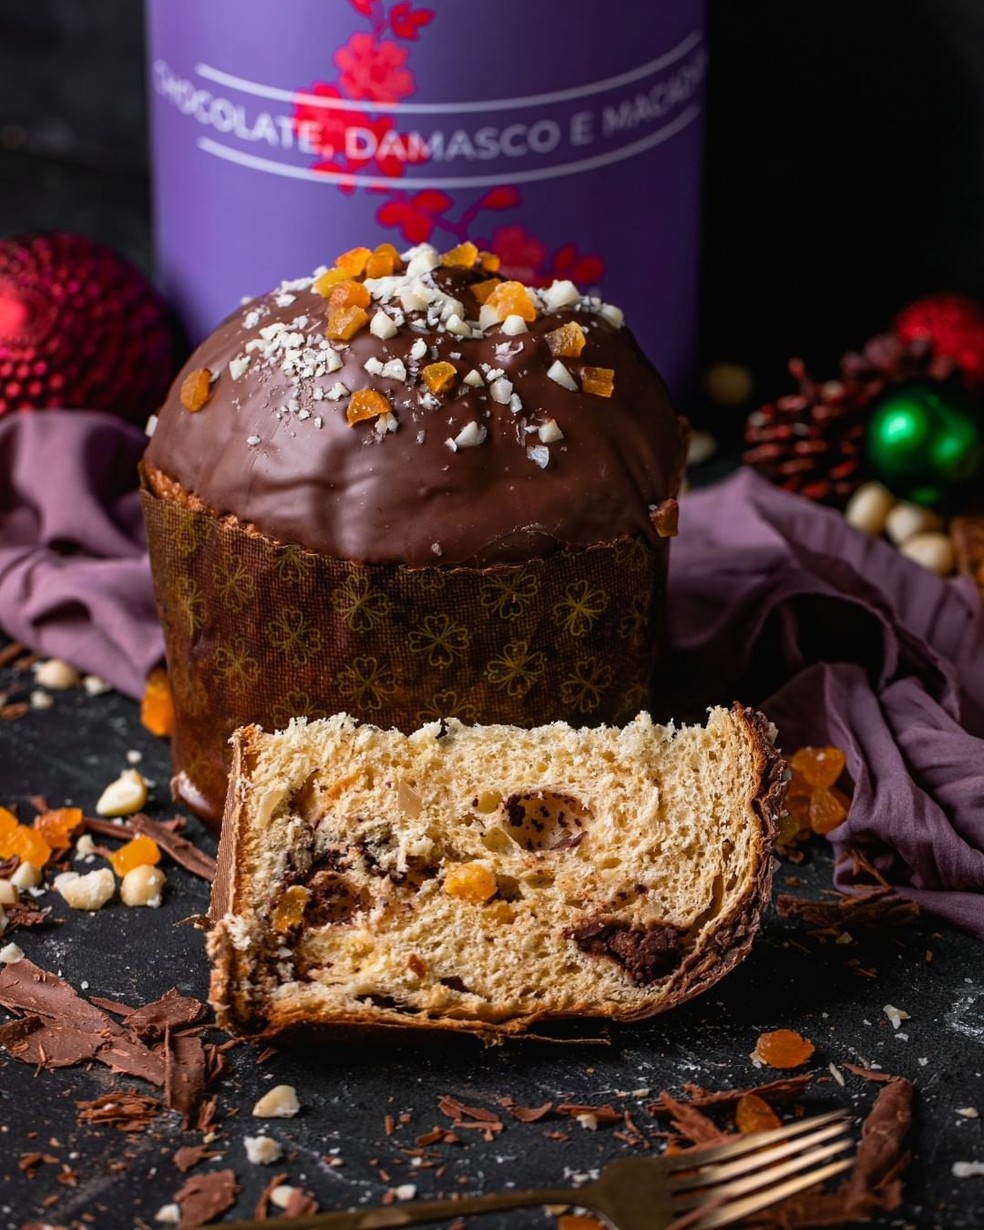 Panetone Chocolate, Damasco e Macadâmia  — Foto: Reprodução / Instagram